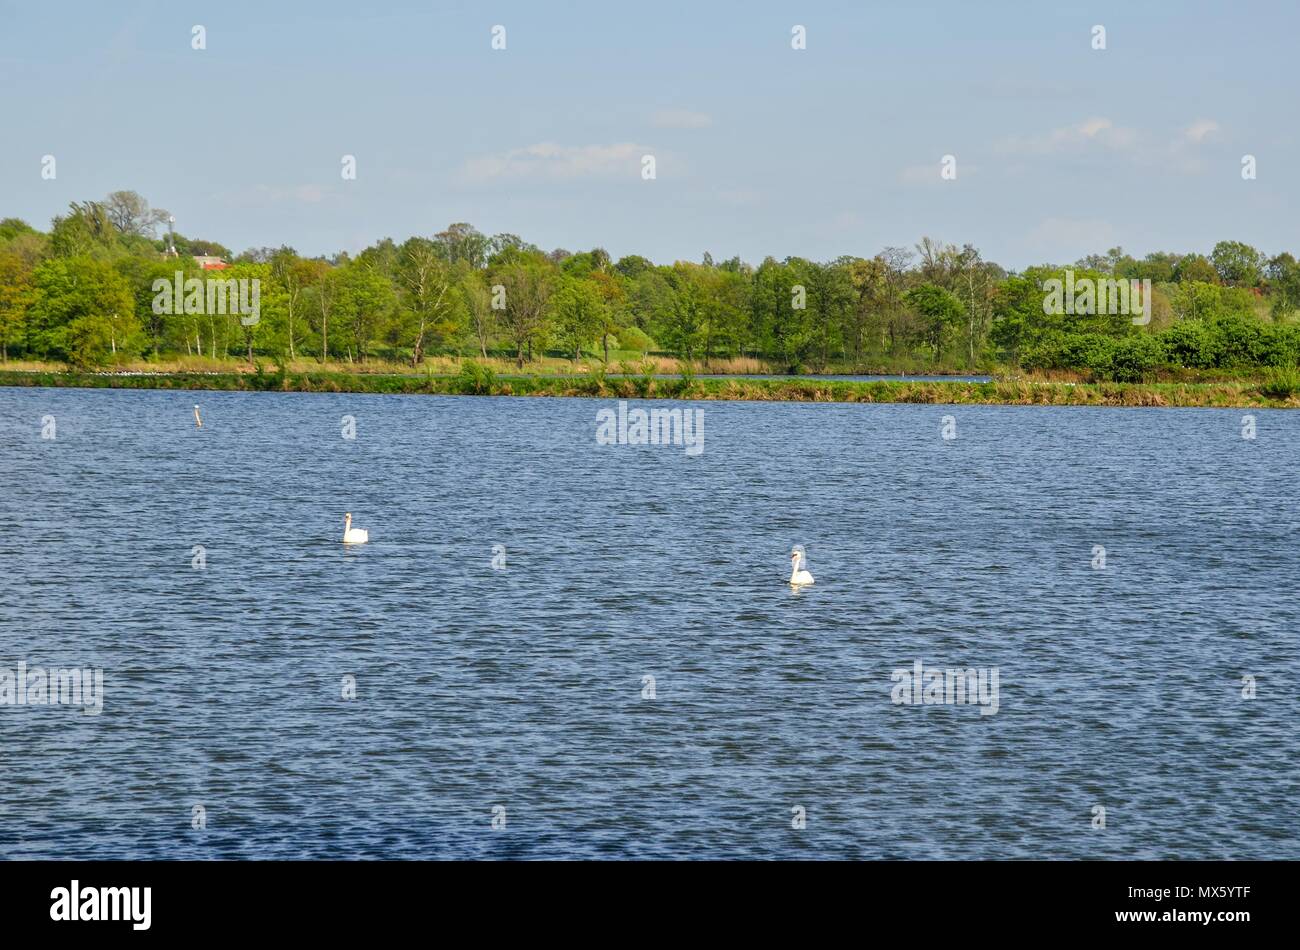 Giornata di sole sull'acqua. Cigni galleggianti in un stagno rurale. Foto Stock